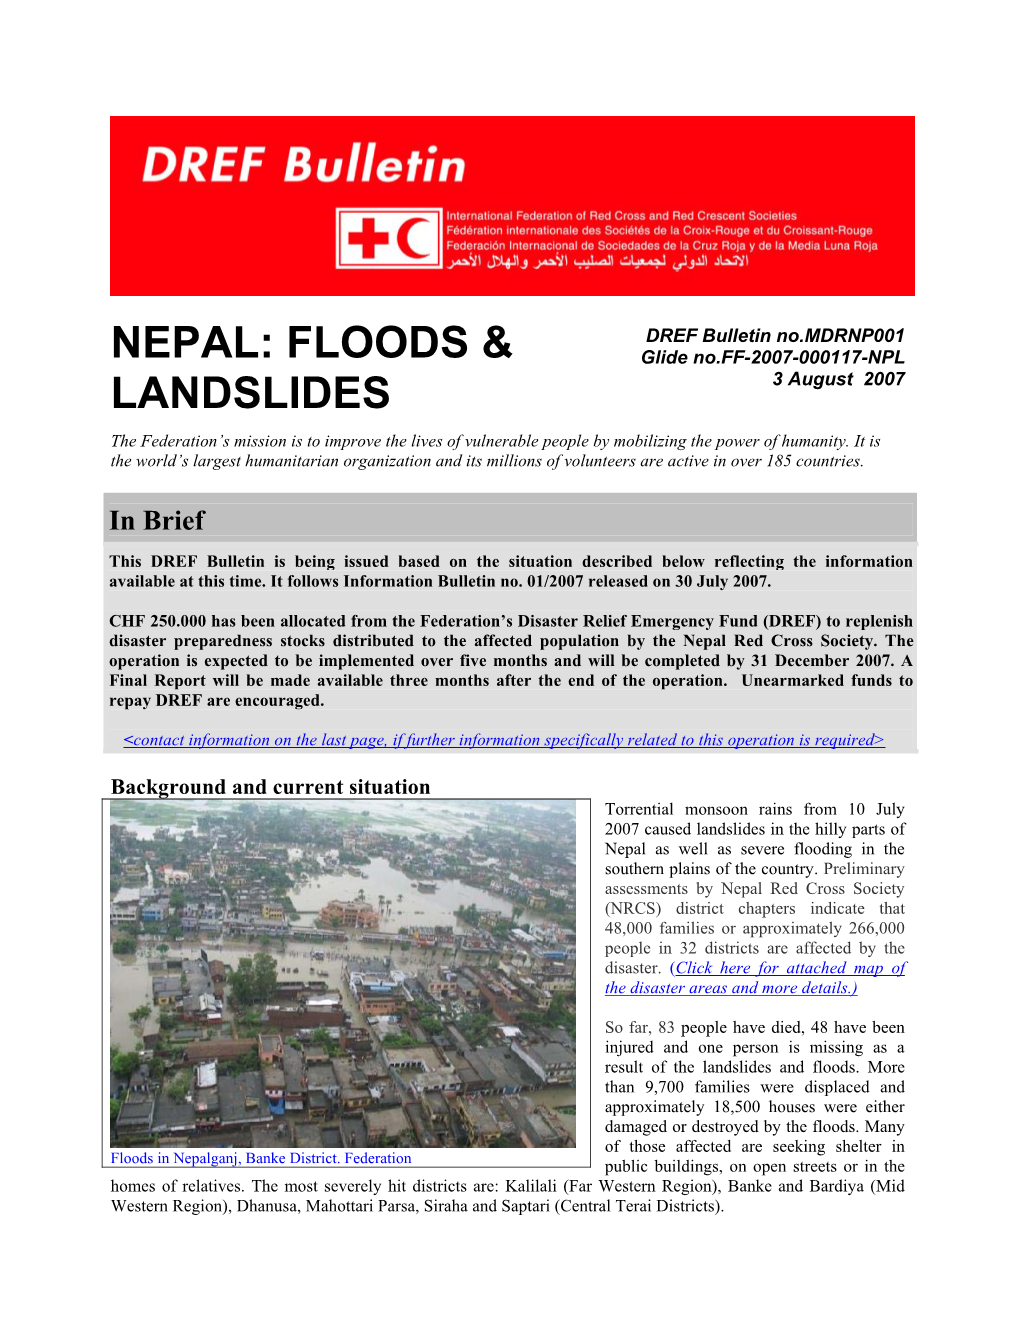 Nepal: Floods & Landslides